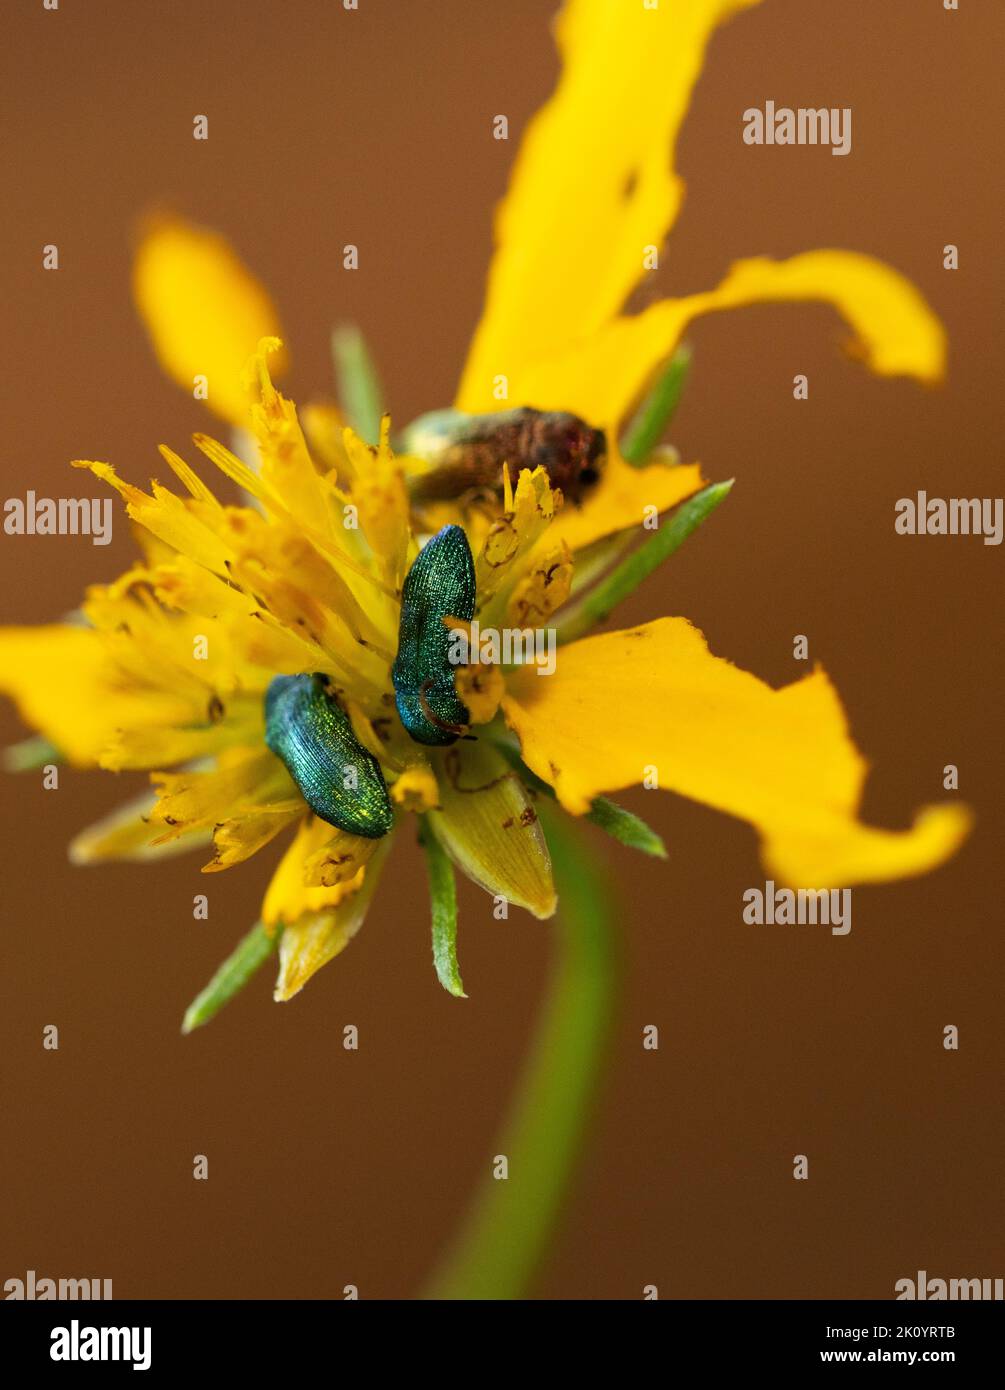 Die schillernden grünen weiblichen glitzernden Edelkäfer werden von gelben Blüten wie dieser Ringelblume angezogen. Sie fressen die Blütenblätter und verbreiten Pollen Stockfoto